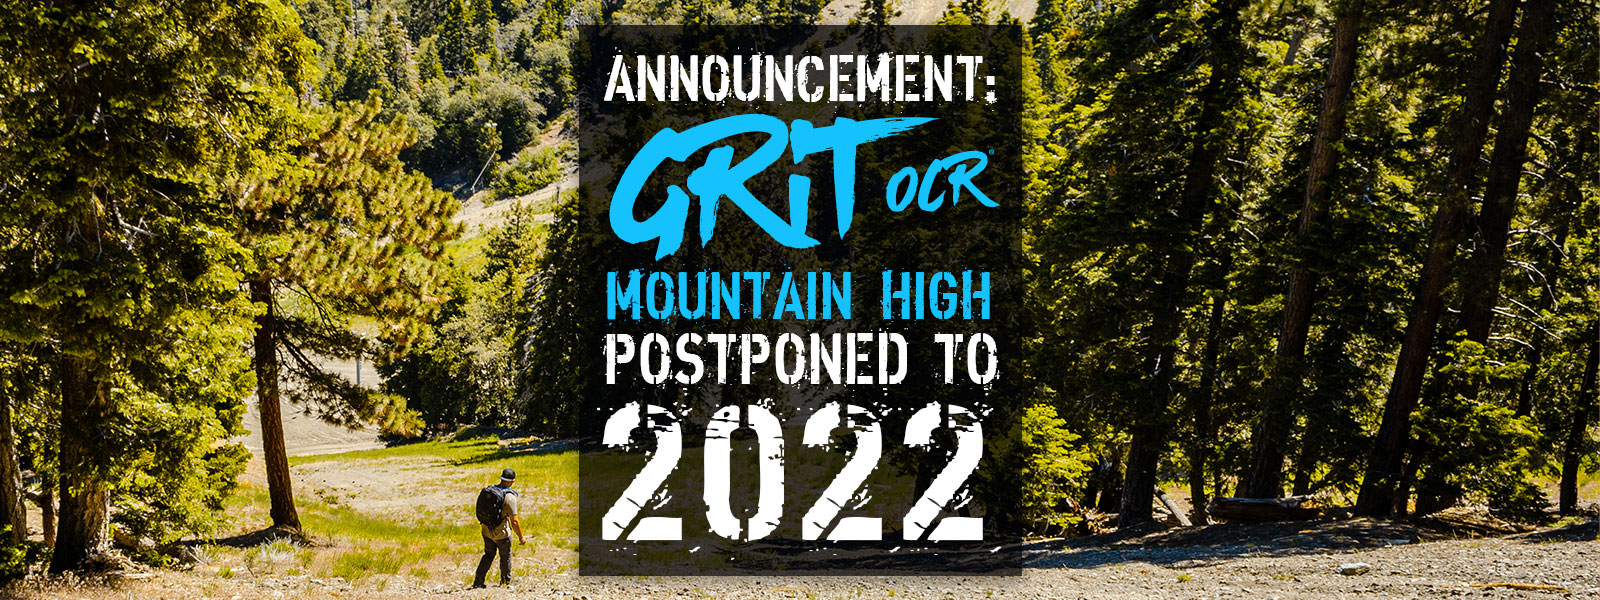 Grit OCR: Mt. High Postponed To 2022